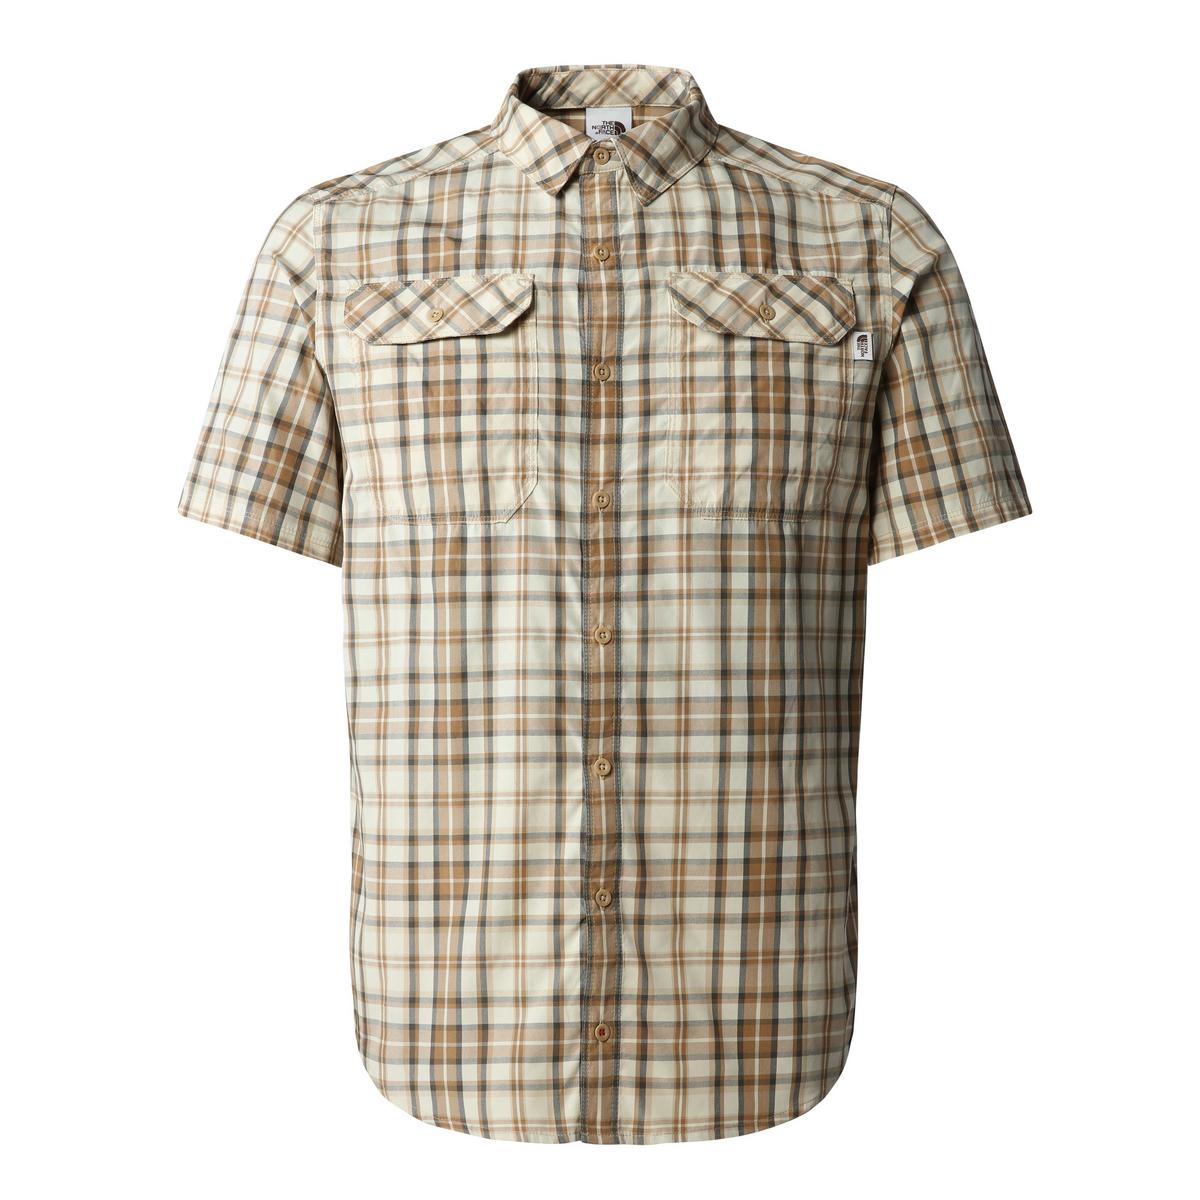 The North Face Men's Pine Knot Shirt - Khaki/Stone/Plaid